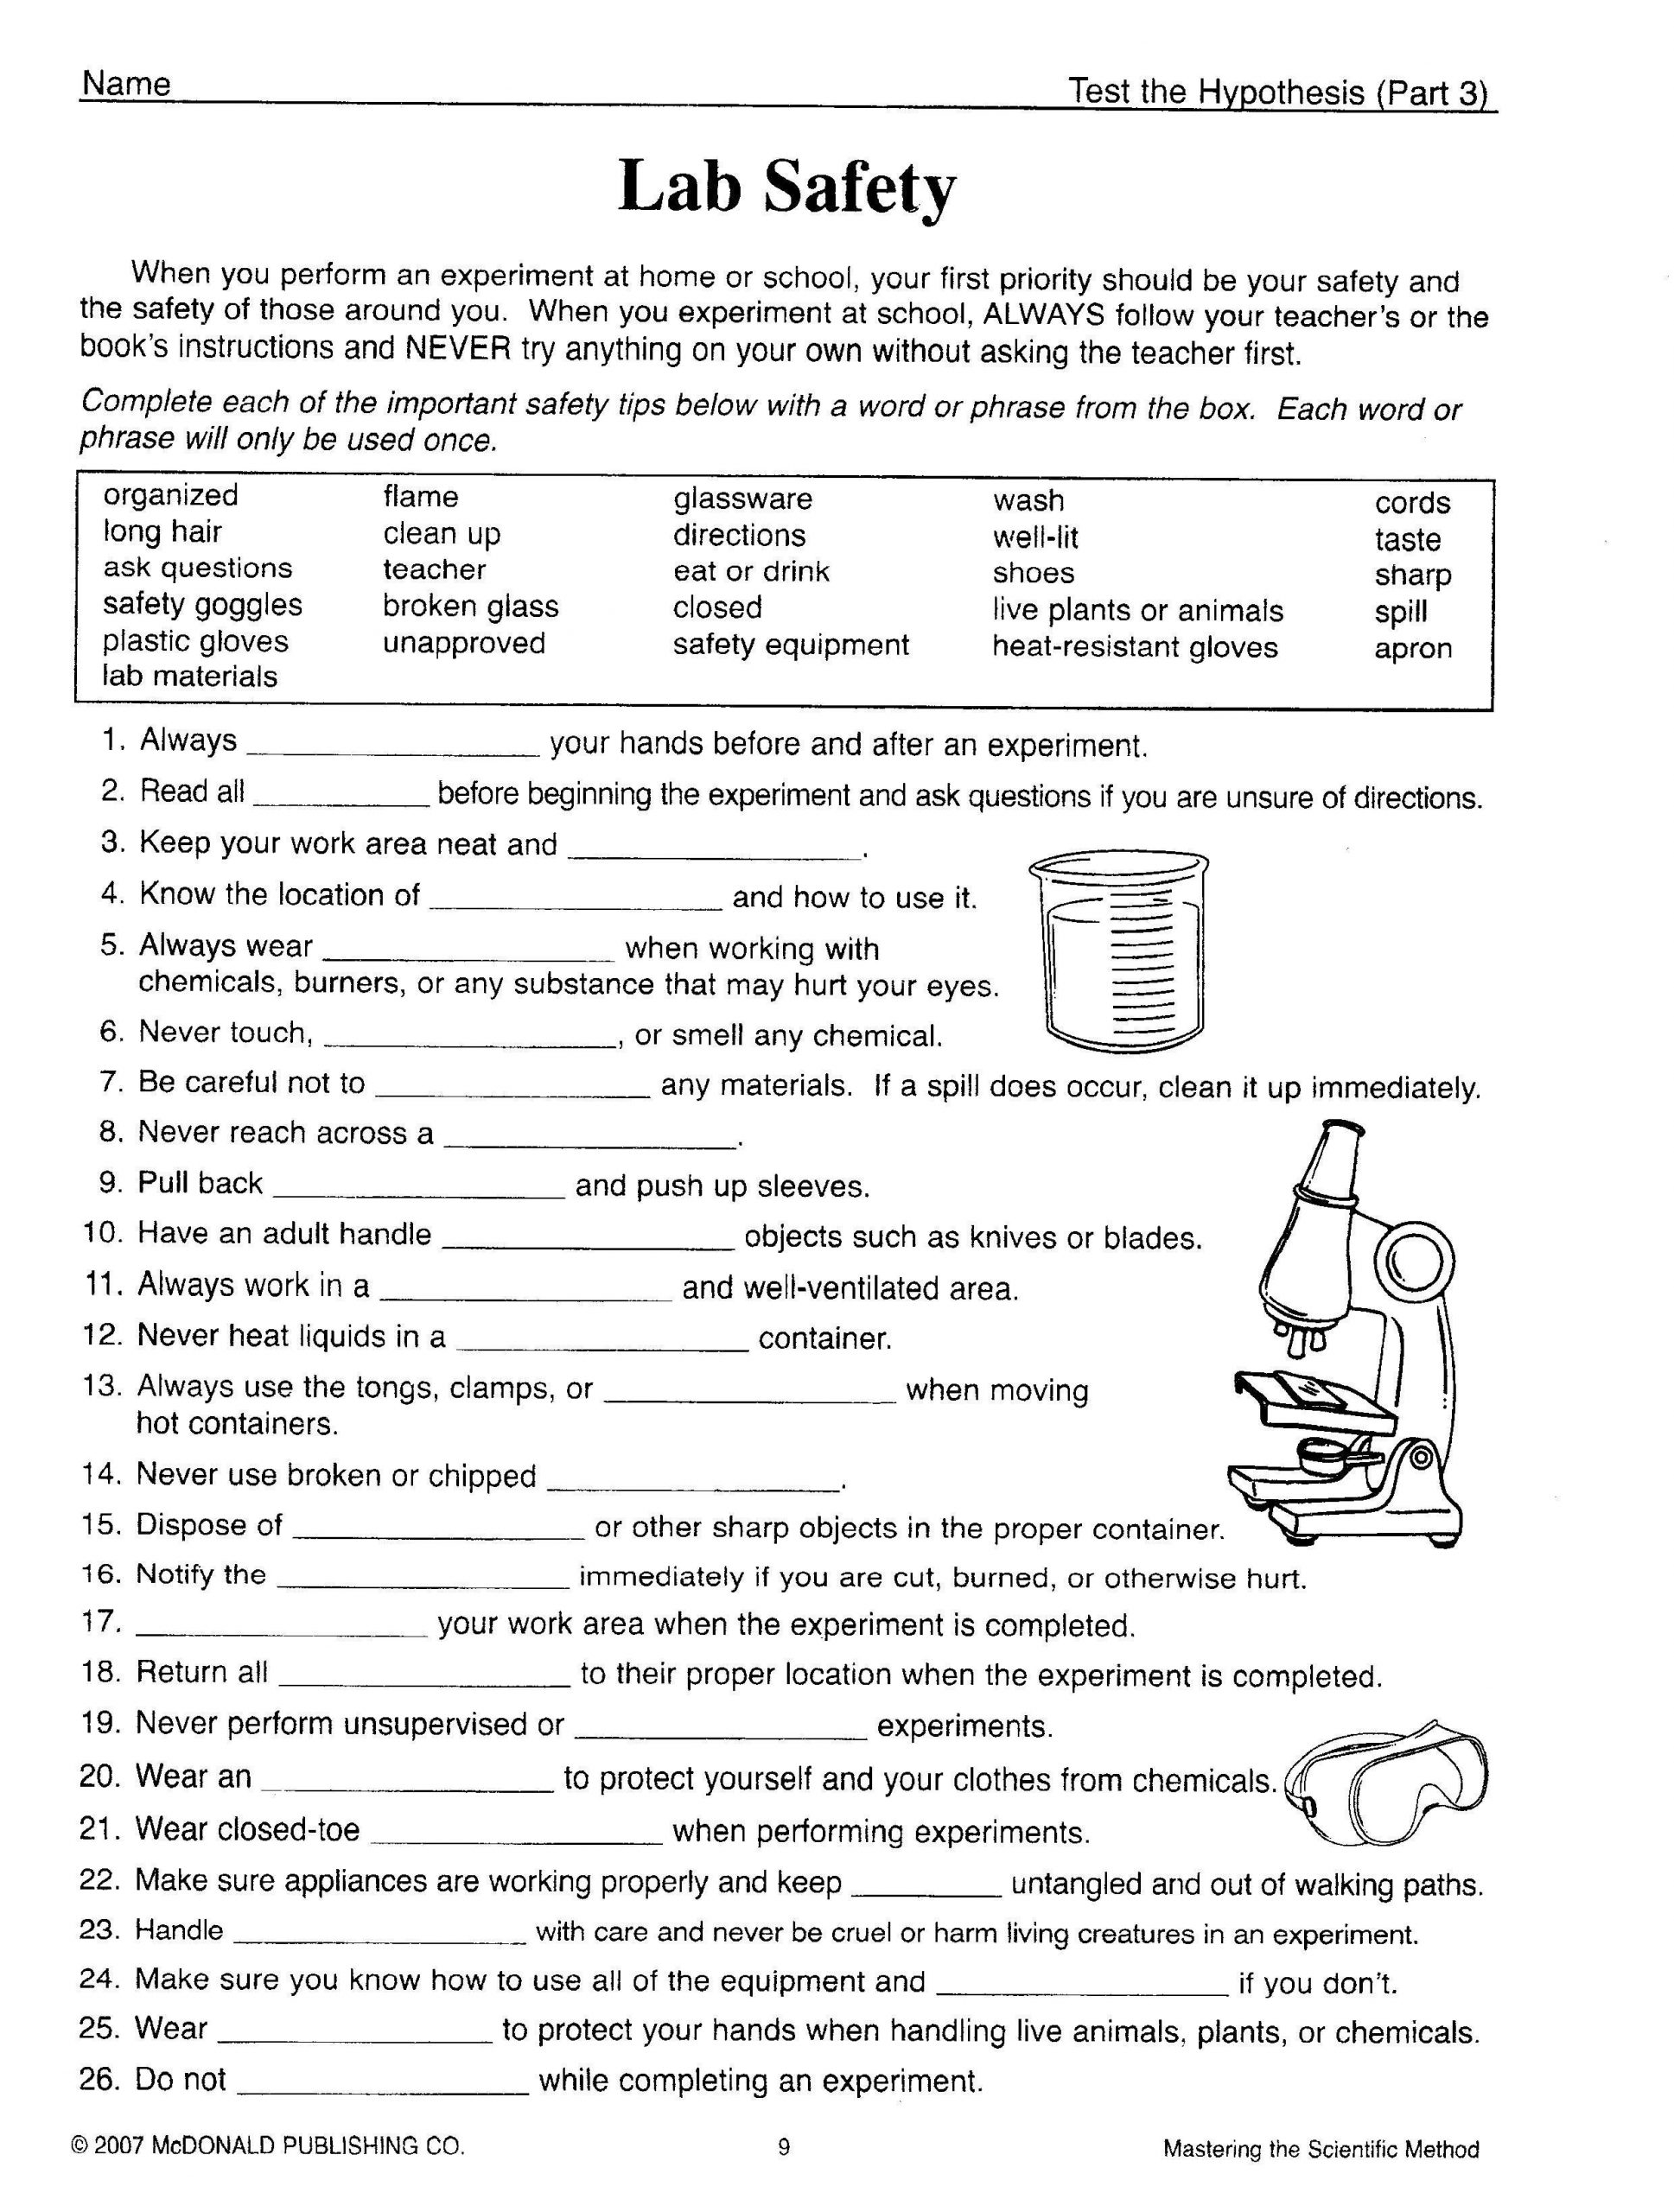 Scientific Method Worksheet Answer Key Science tools Worksheet 4th Grade Fresh Kids Science